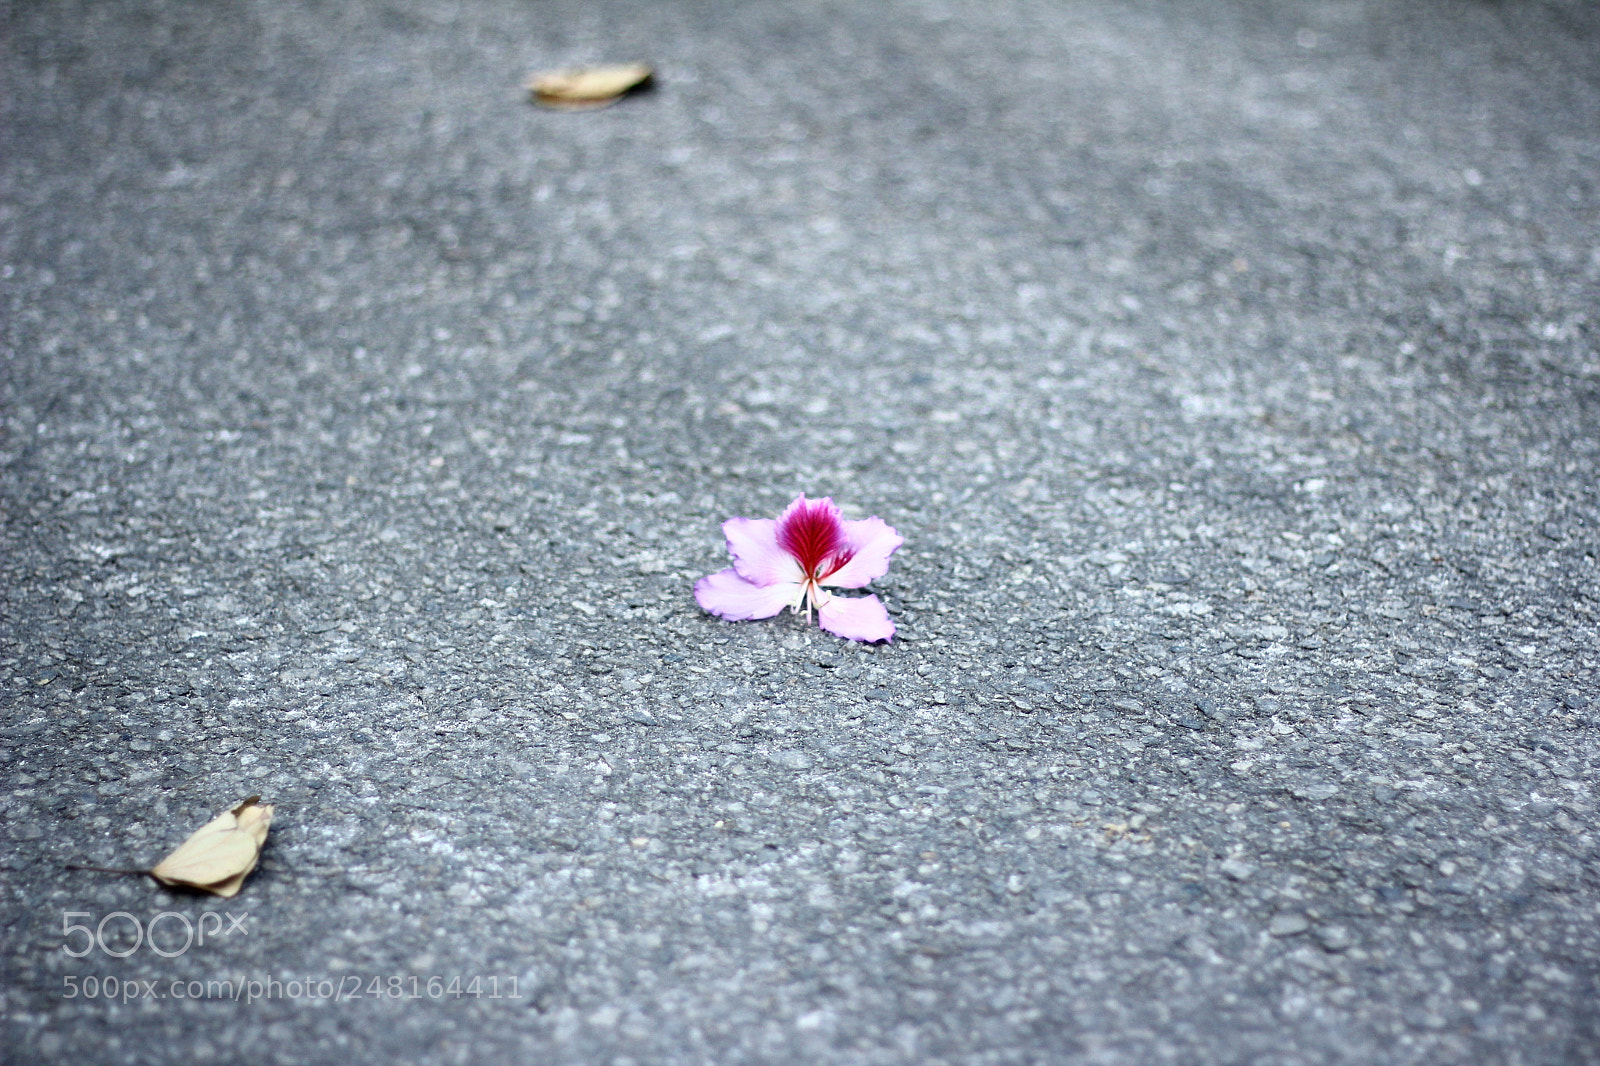 Canon EOS 60D sample photo. The fallen petal photography